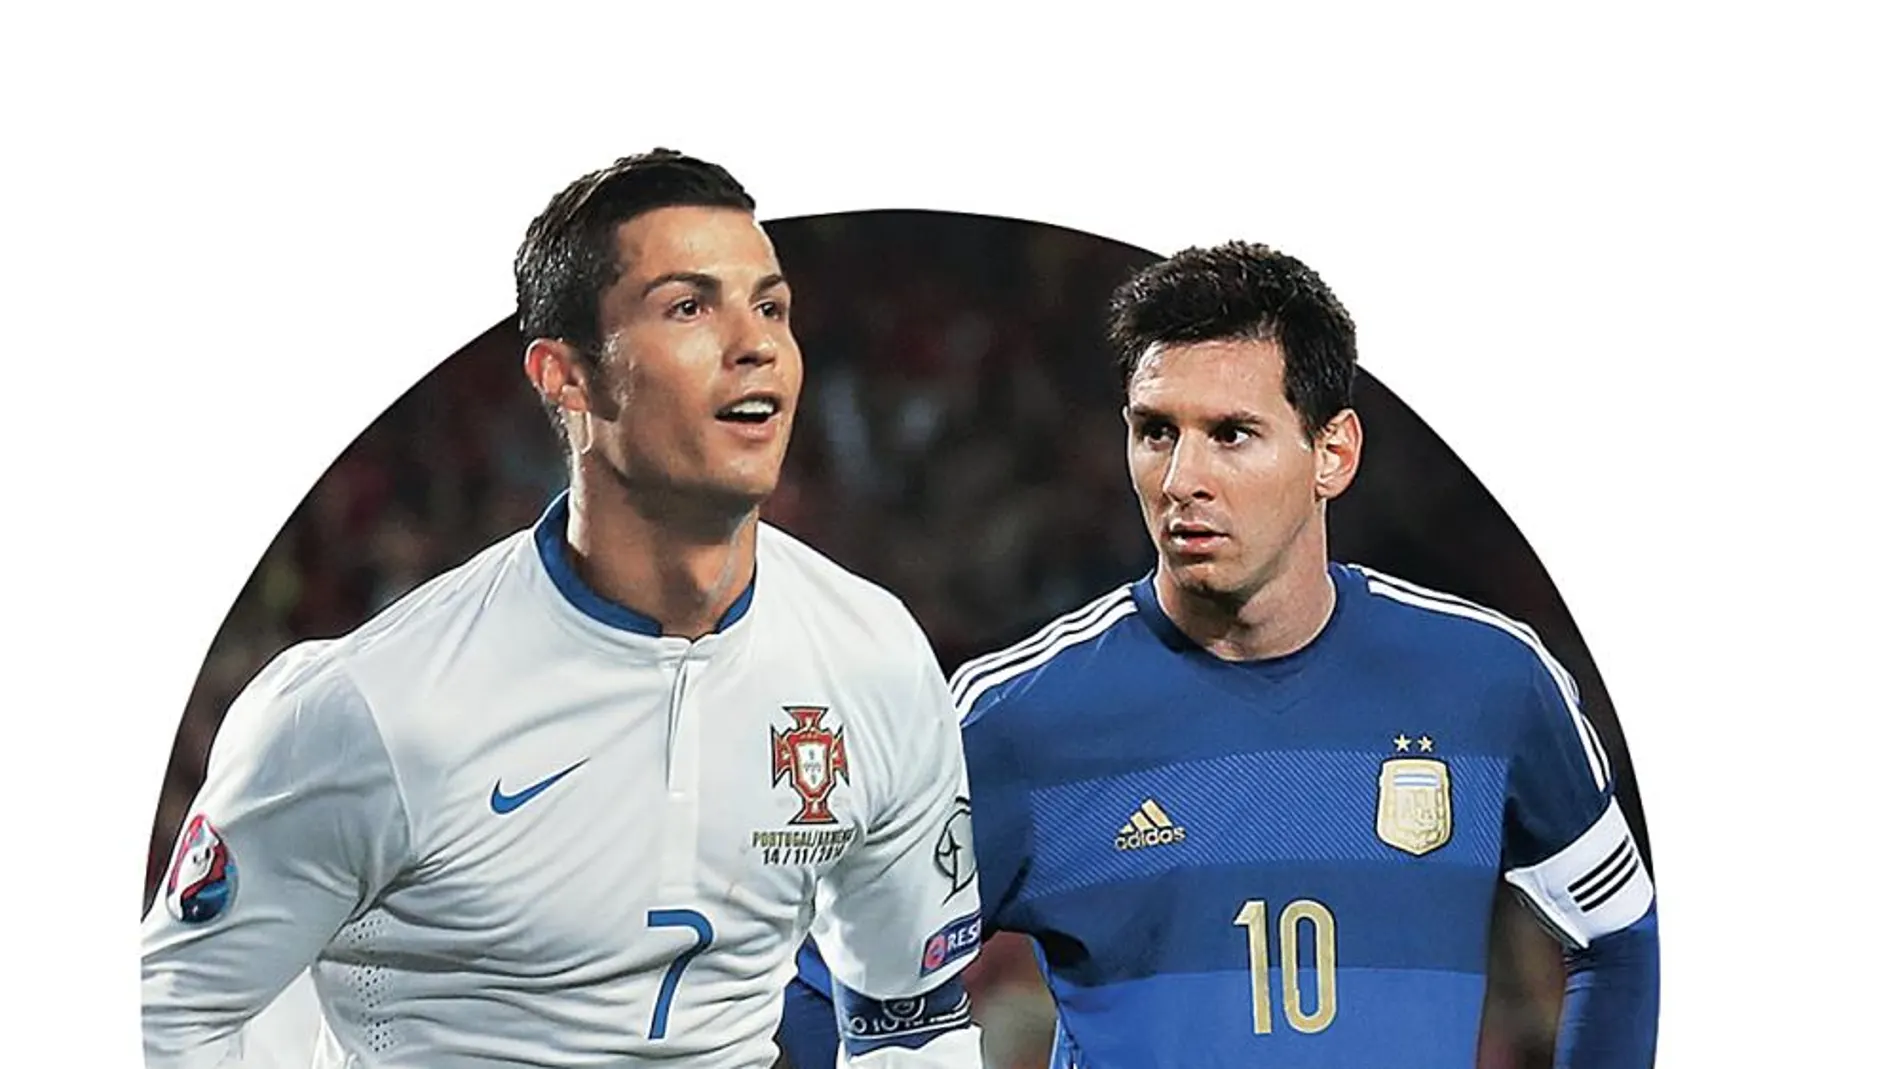 Cara a cara: ¿Quién ganara el duelo de Portugal-Argentina?